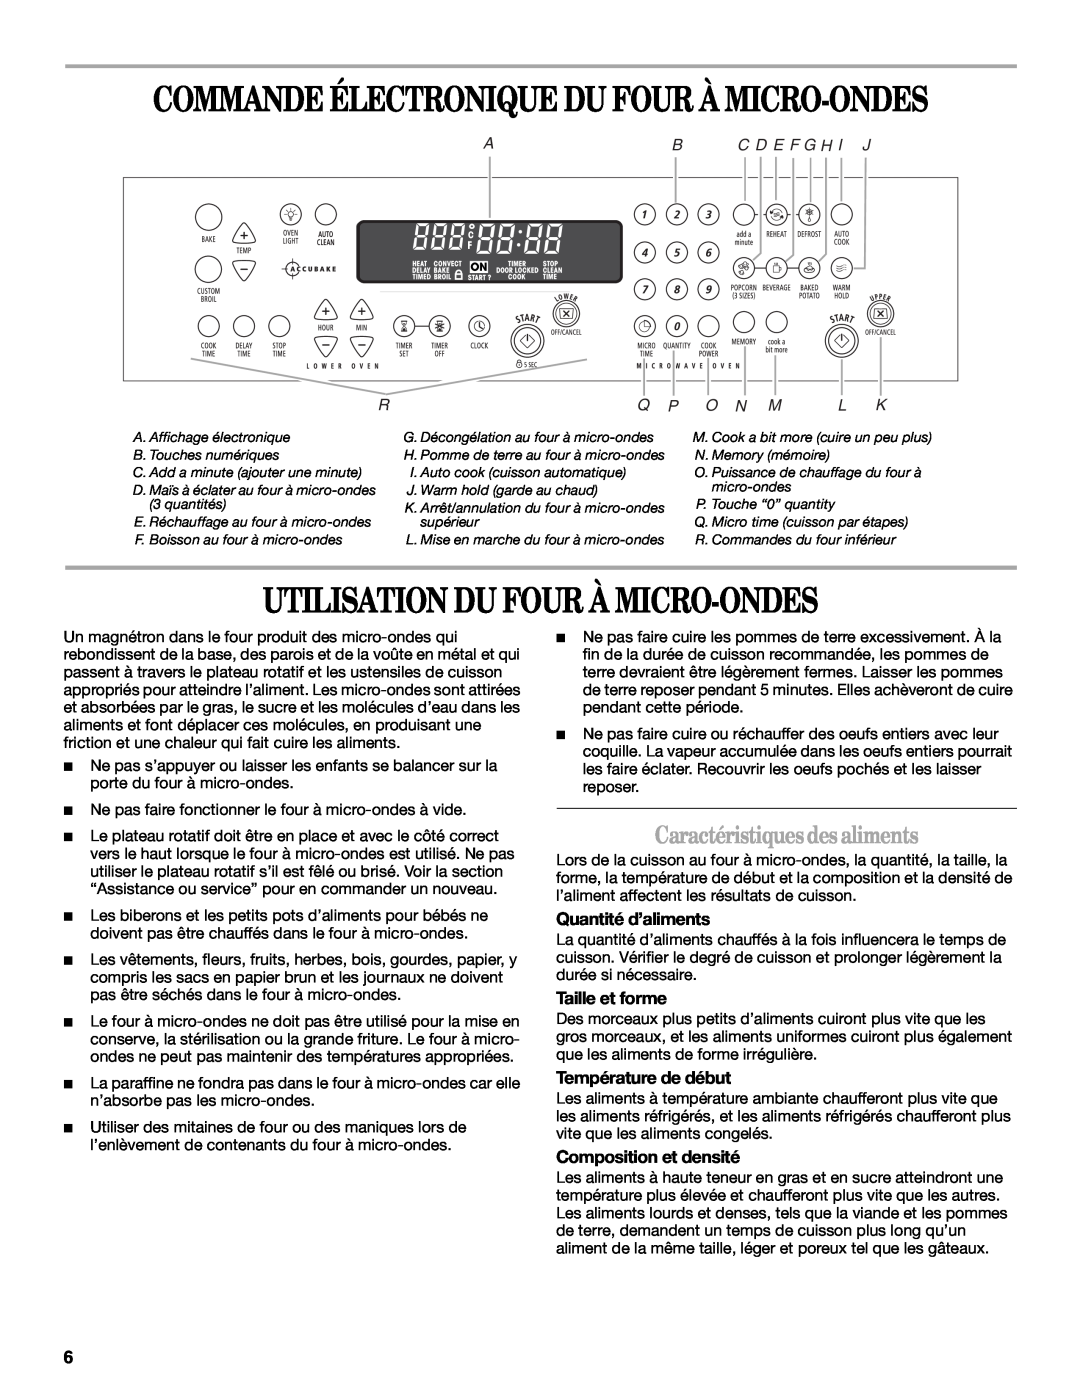 Whirlpool GMC305 Utilisation Du Four À Micro-Ondes, Caractéristiquesdesaliments, Quantité d’aliments, Taille et forme 